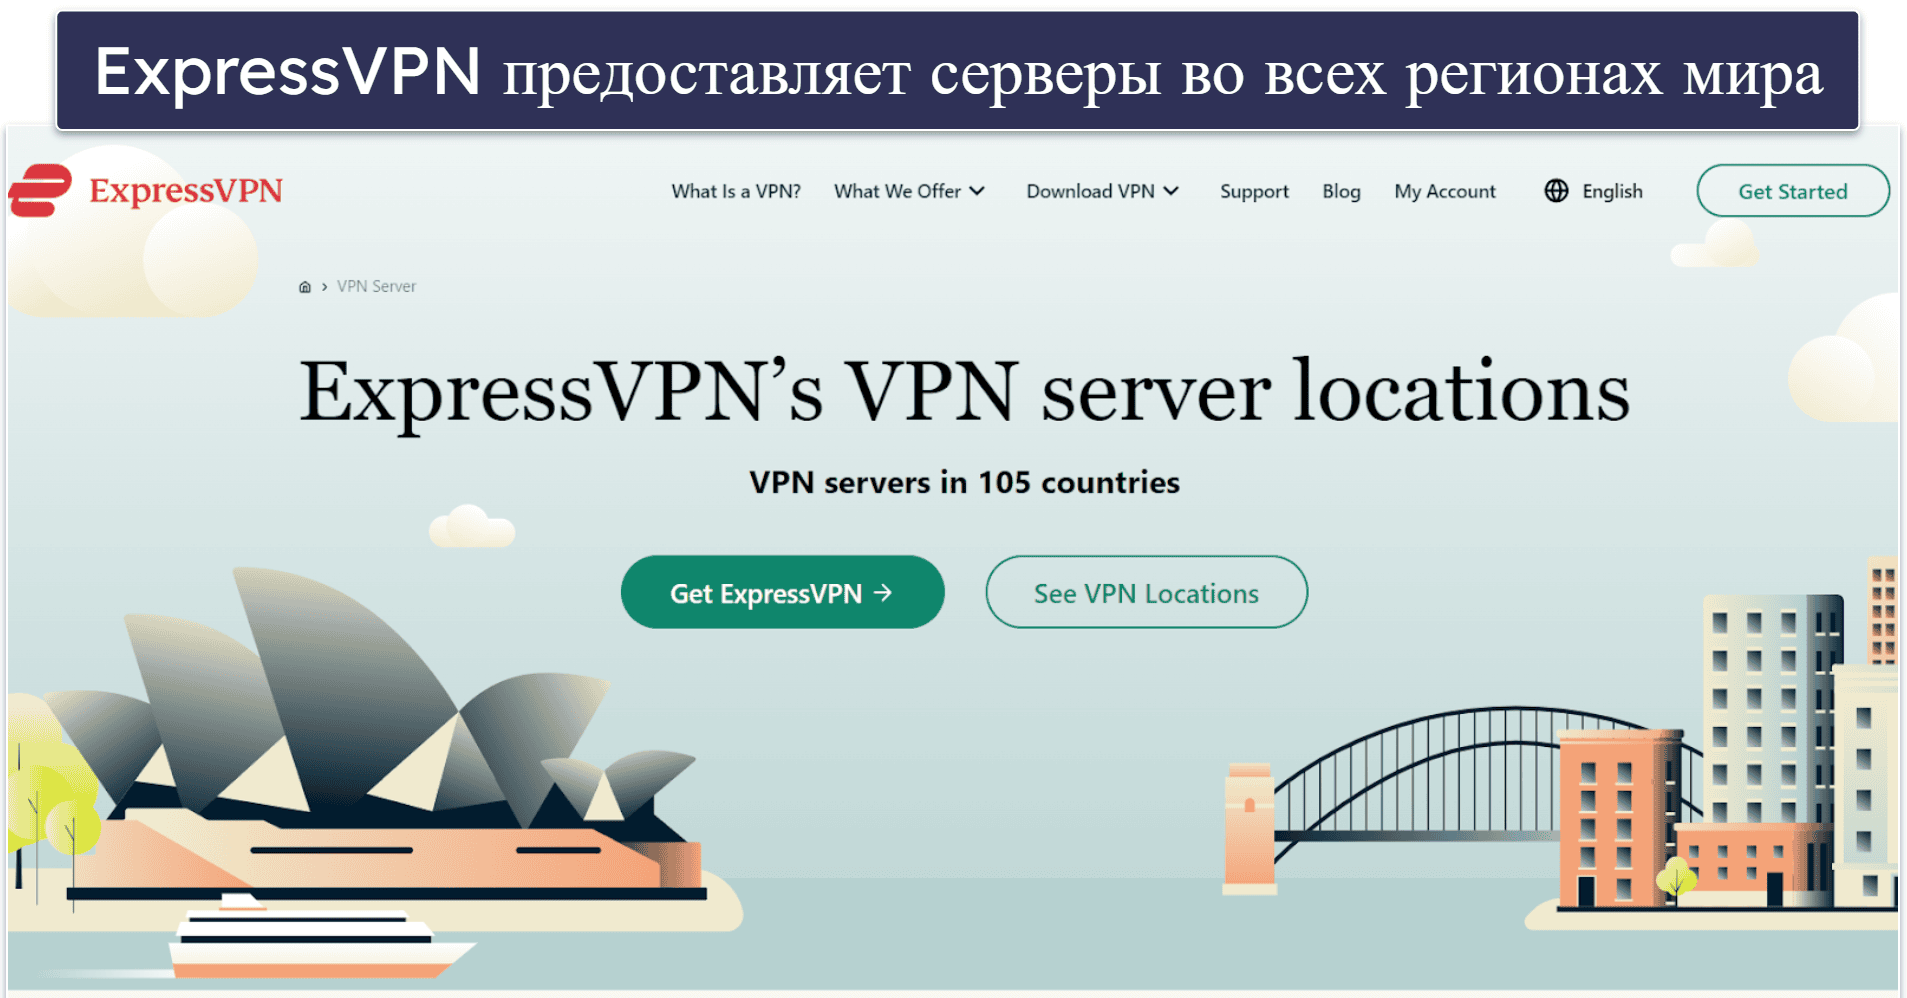 Зачем использовать ExpressVPN?